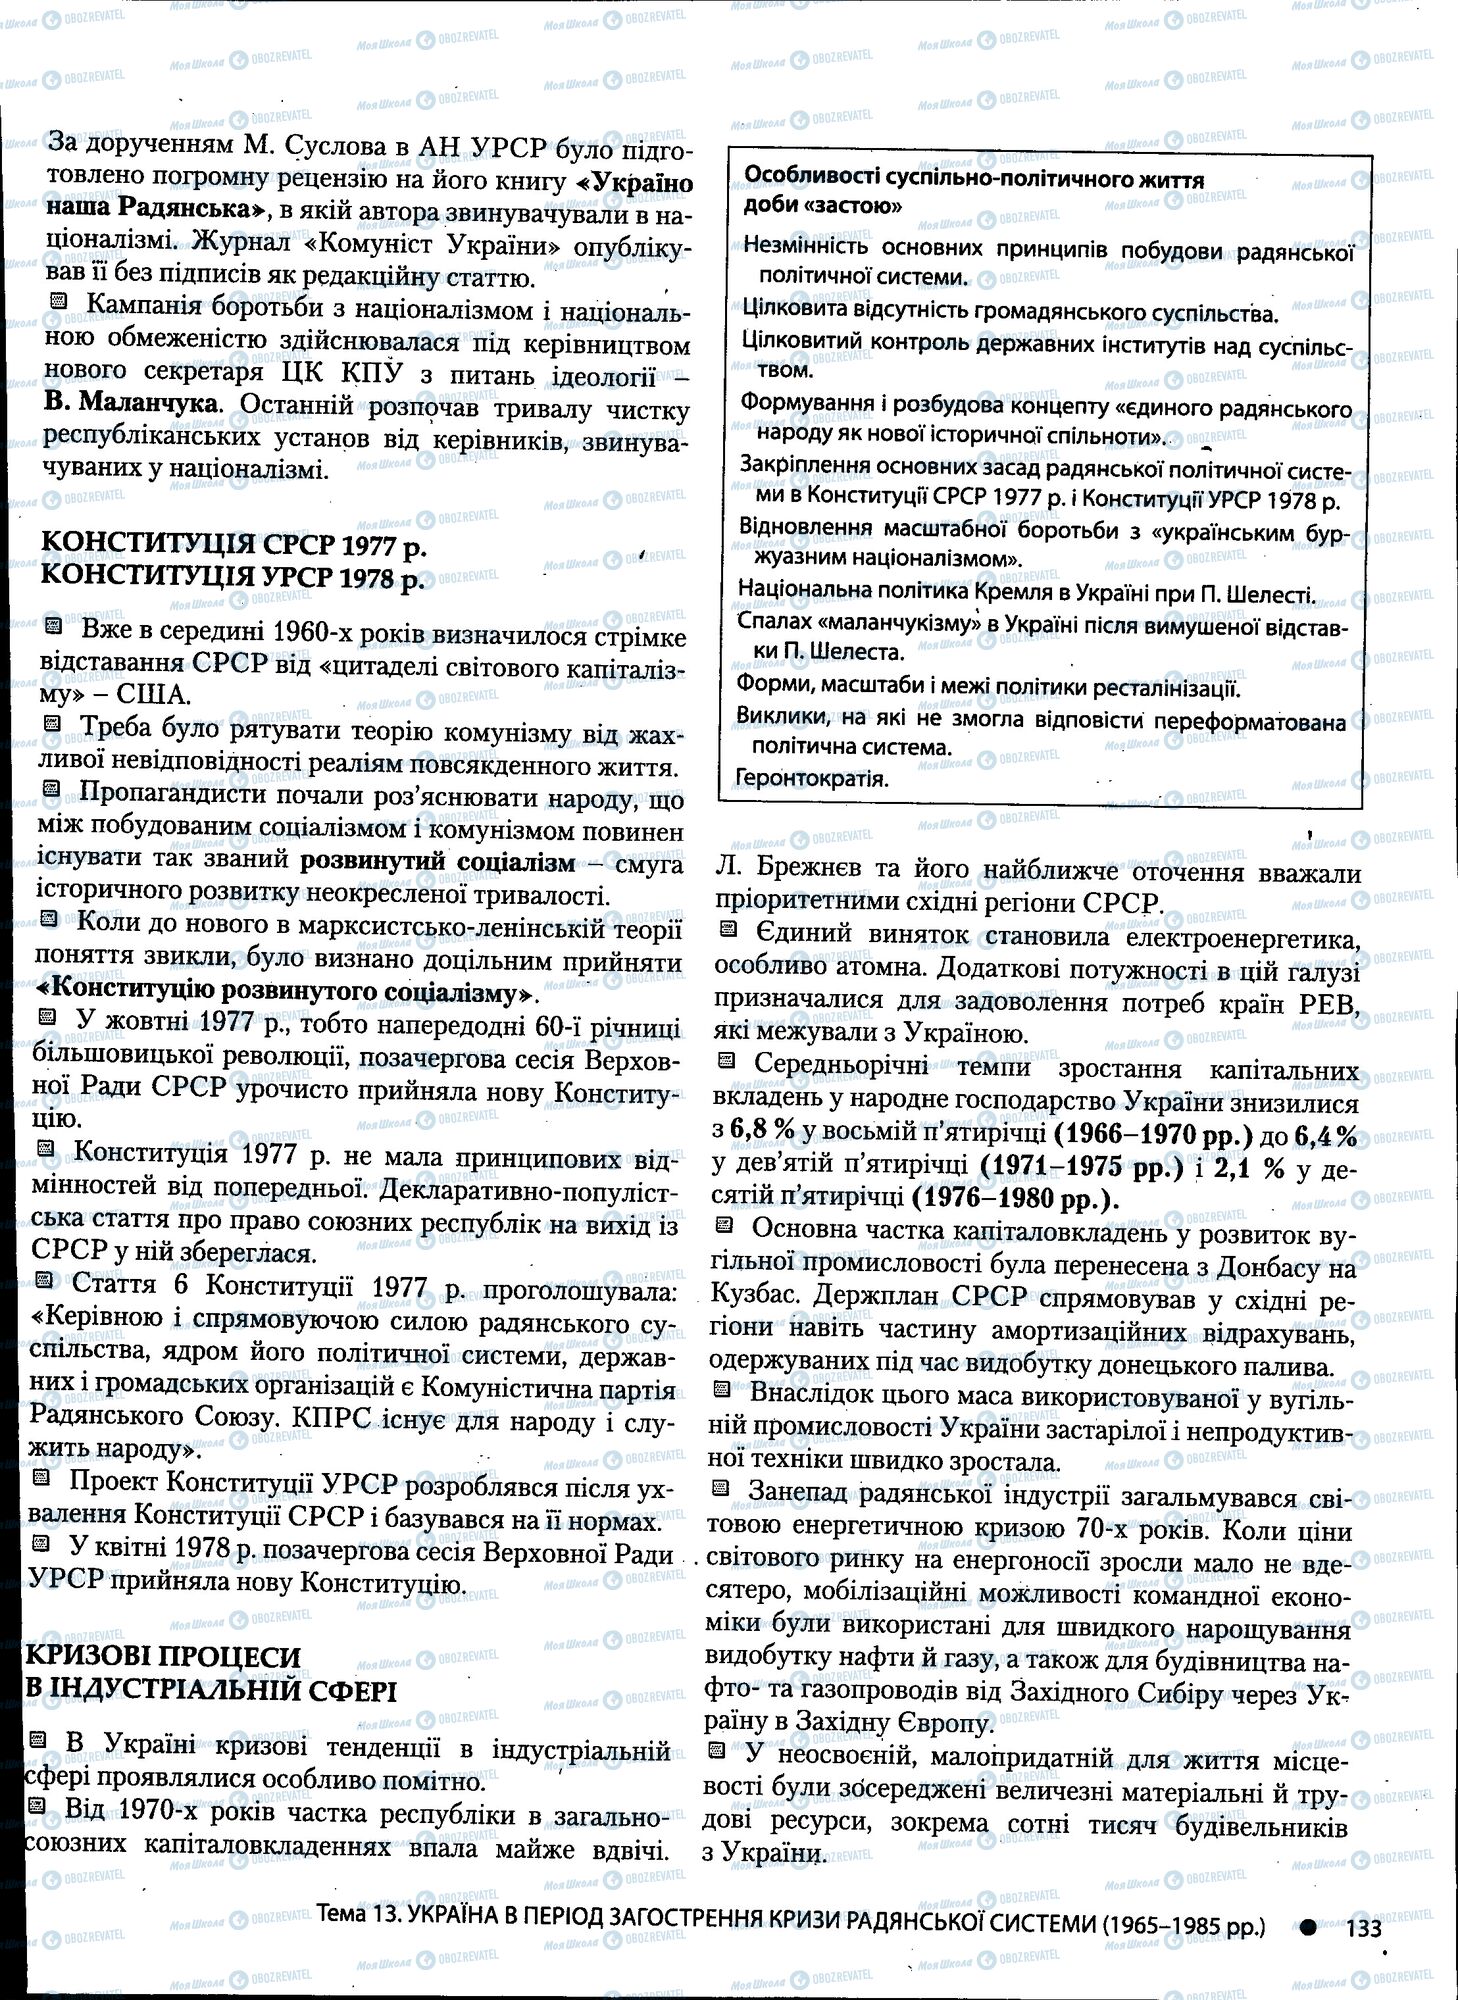 ДПА История Украины 11 класс страница 133